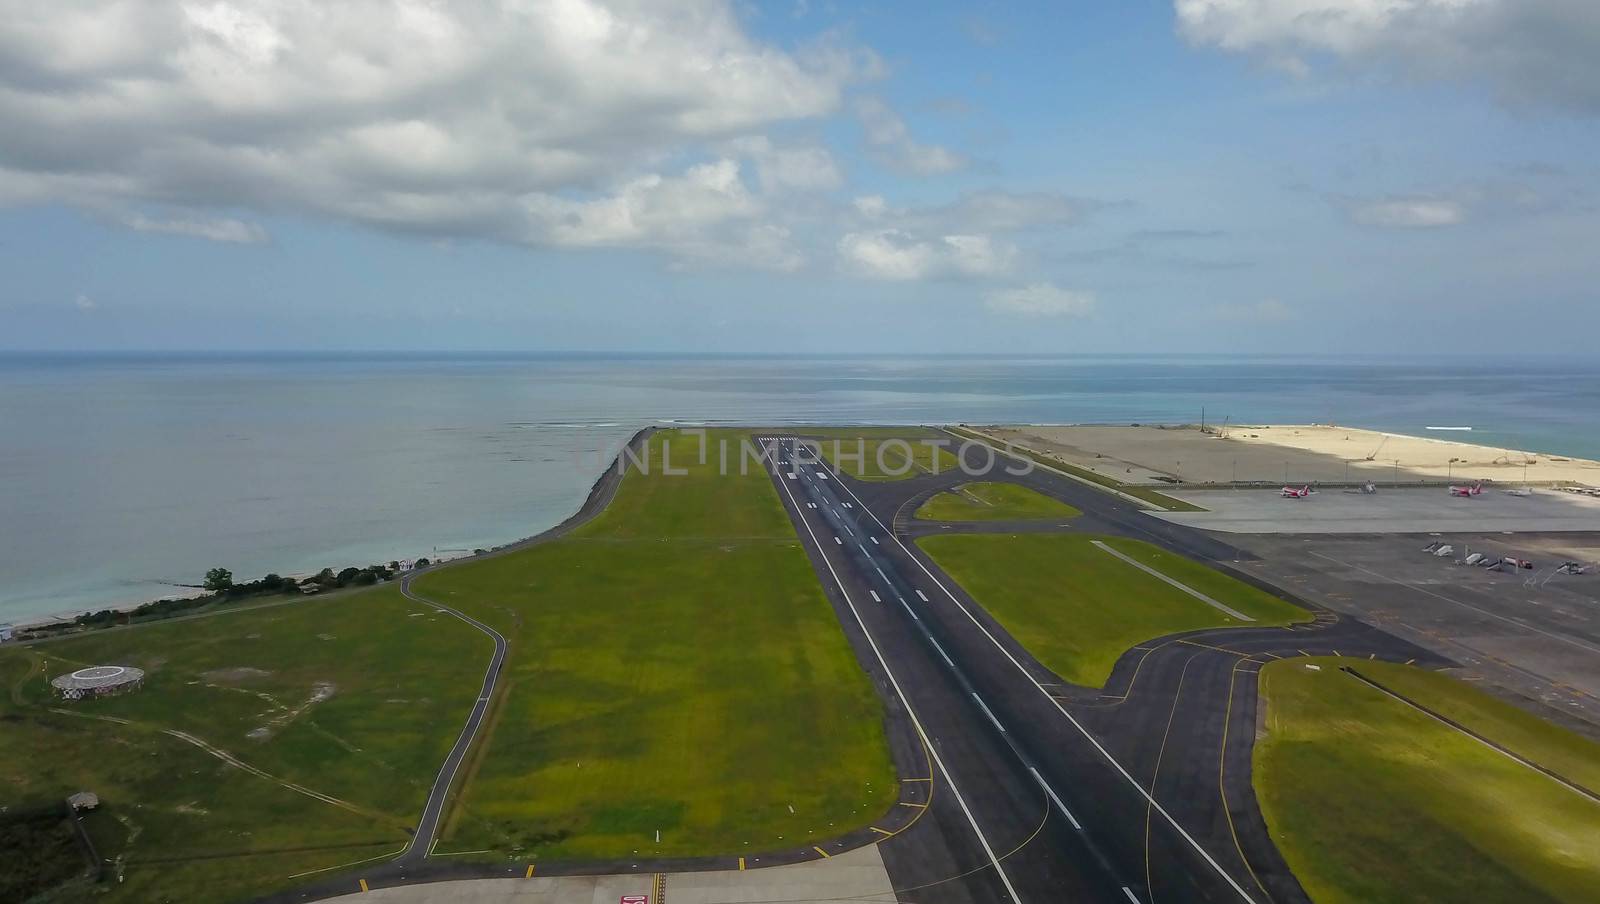 Runway at Denpasar International Airport in Bali, Indonesia. Runway reaching into the ocean. Aerial view to Ngurah Rai airport.